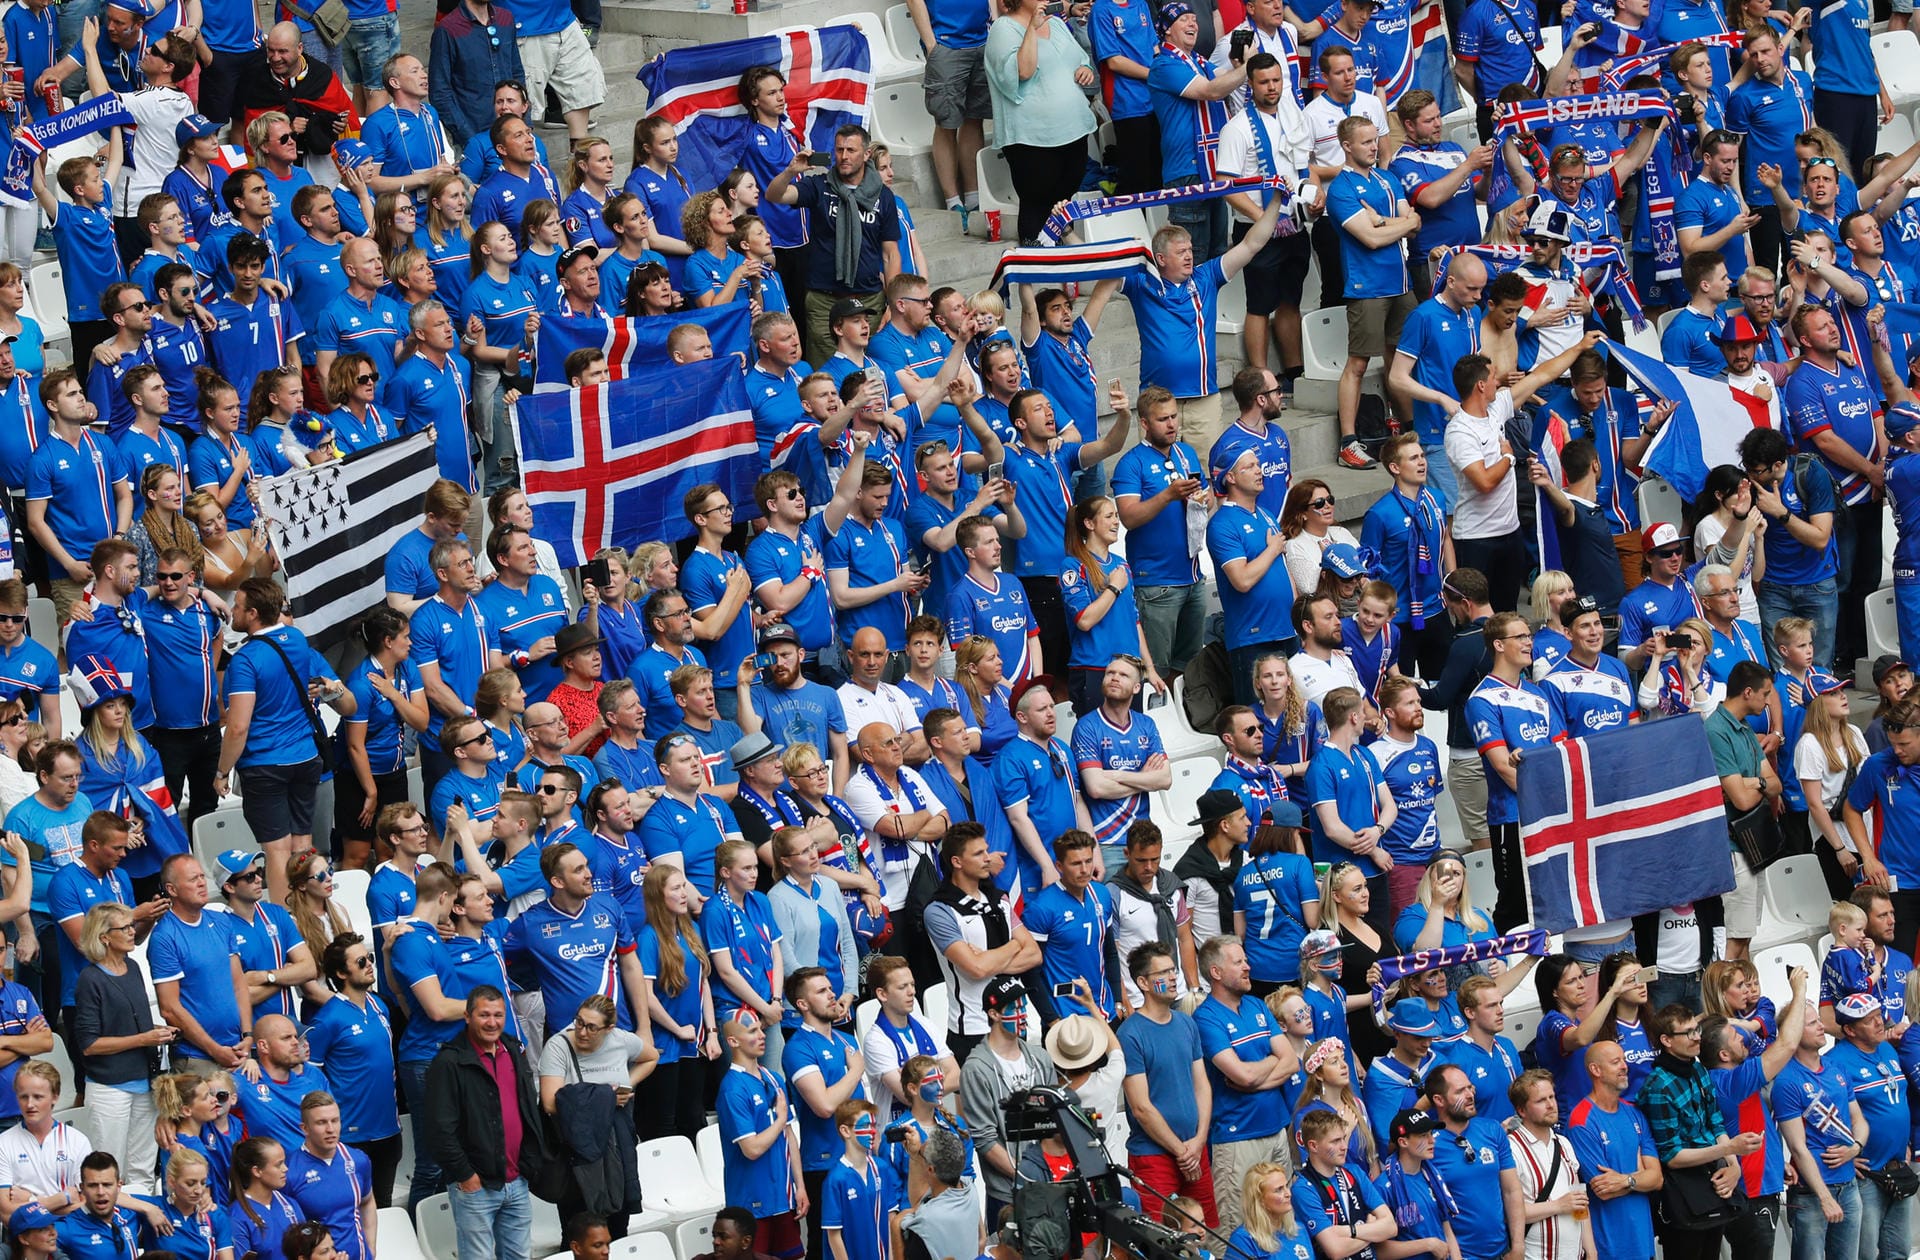 Anders das Bild im Block der isländischen Fans: sie demonstrieren Geschlossenheit, sind gut gelaunt und bleiben friedlich. Darauf sollte es auch ankommen!